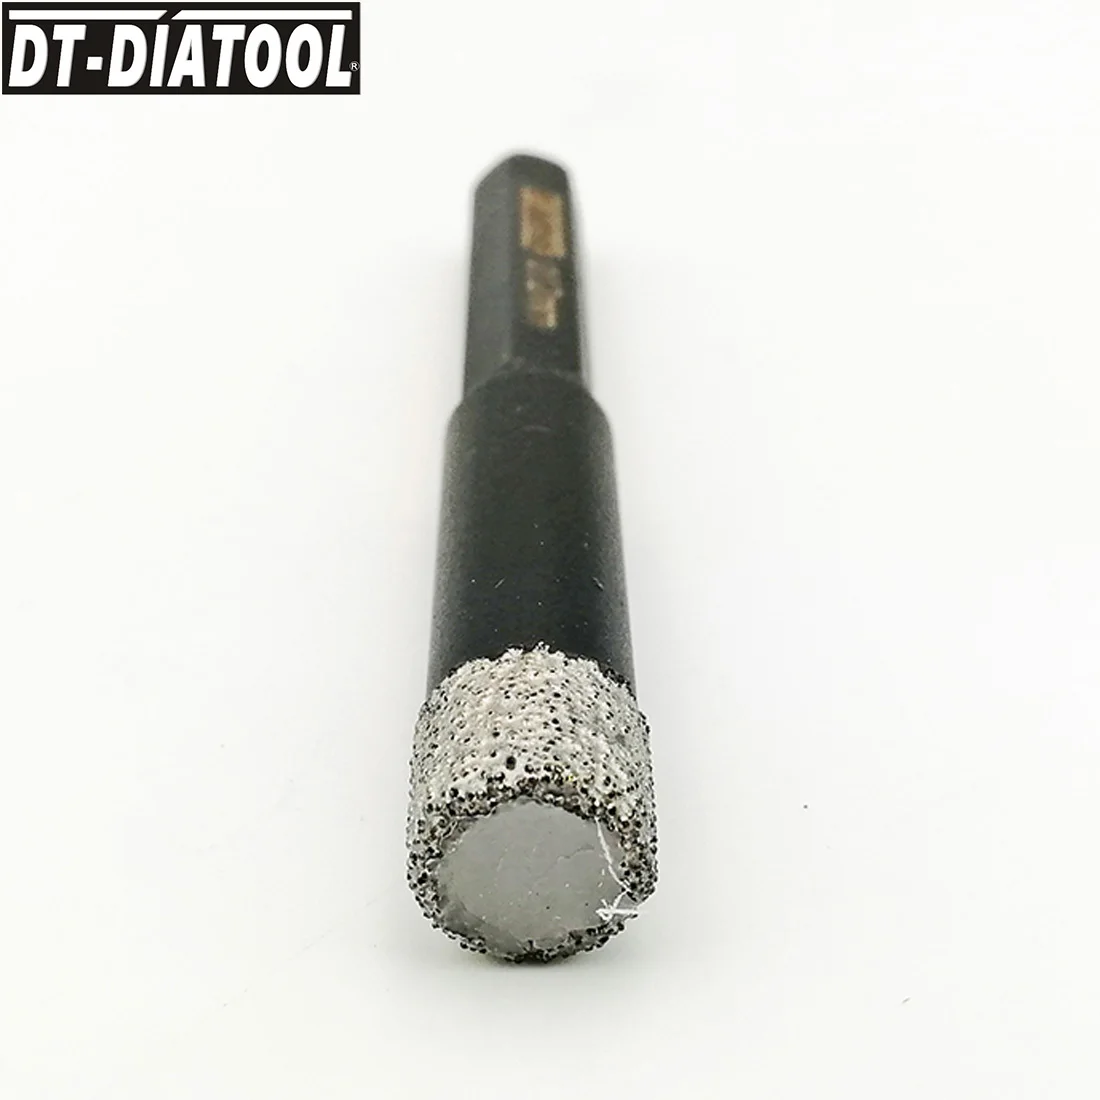 DT-DIATOOL 3tk Dia12mm Kuiv Tolmuimeja Brazed teemantpuurimine, Natuke Kuusnurk Varre Auk Nägi, Graniit, Marmor Keraamiline Plaat Drill Core Bit Pilt 4